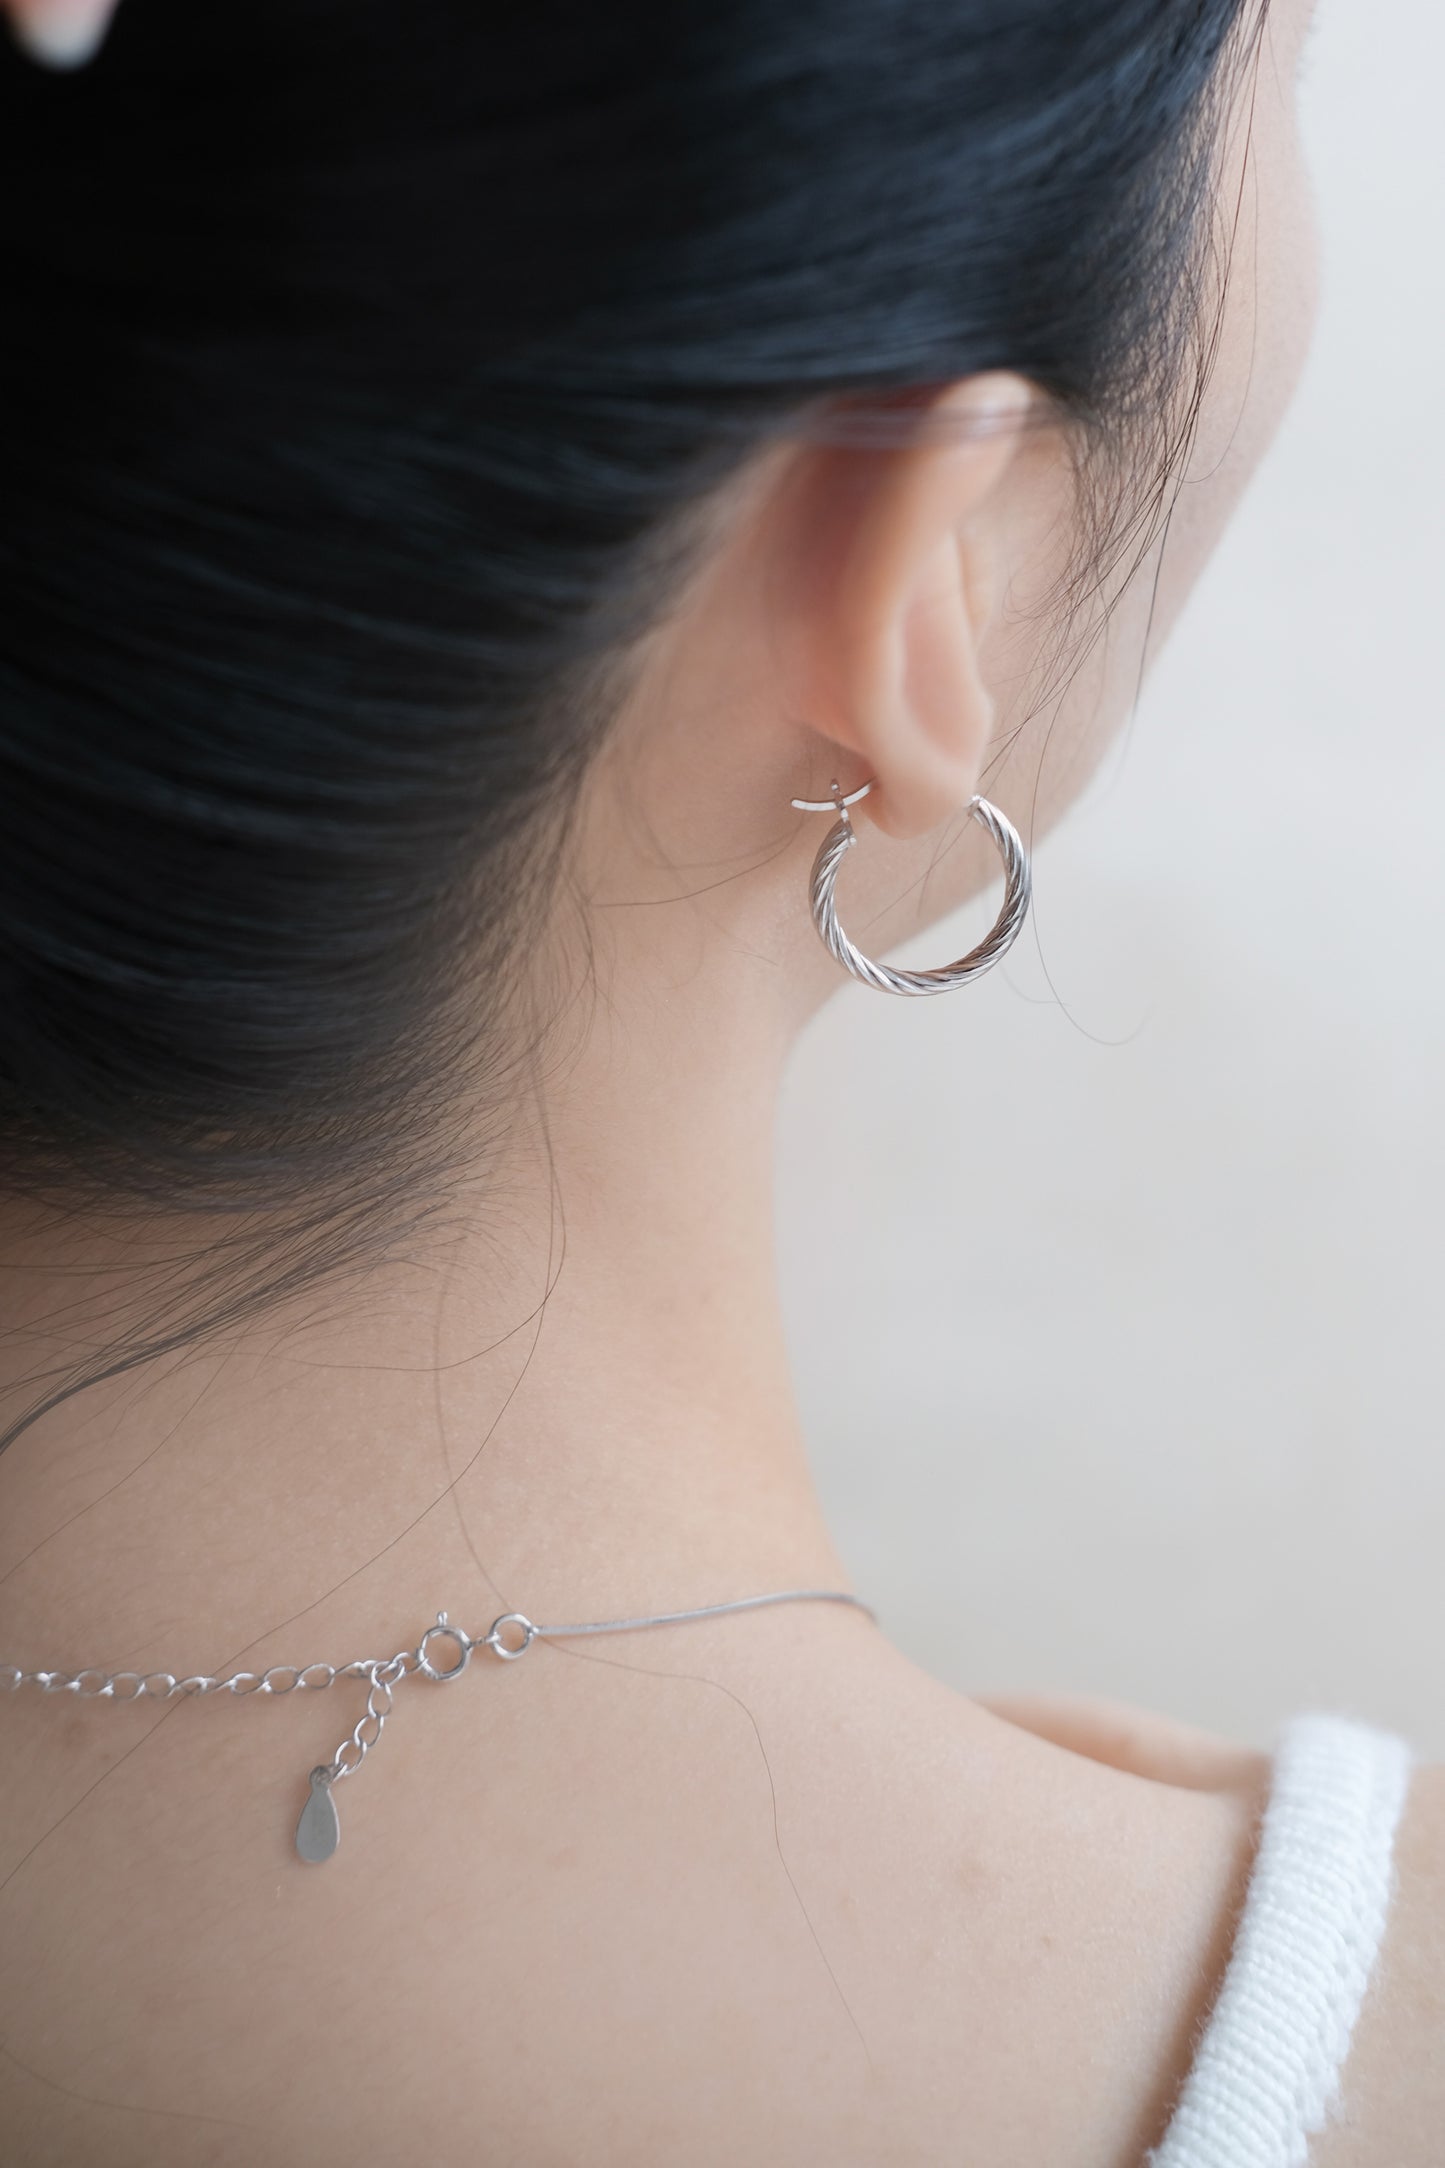 Twist earrings in Sterling Silver